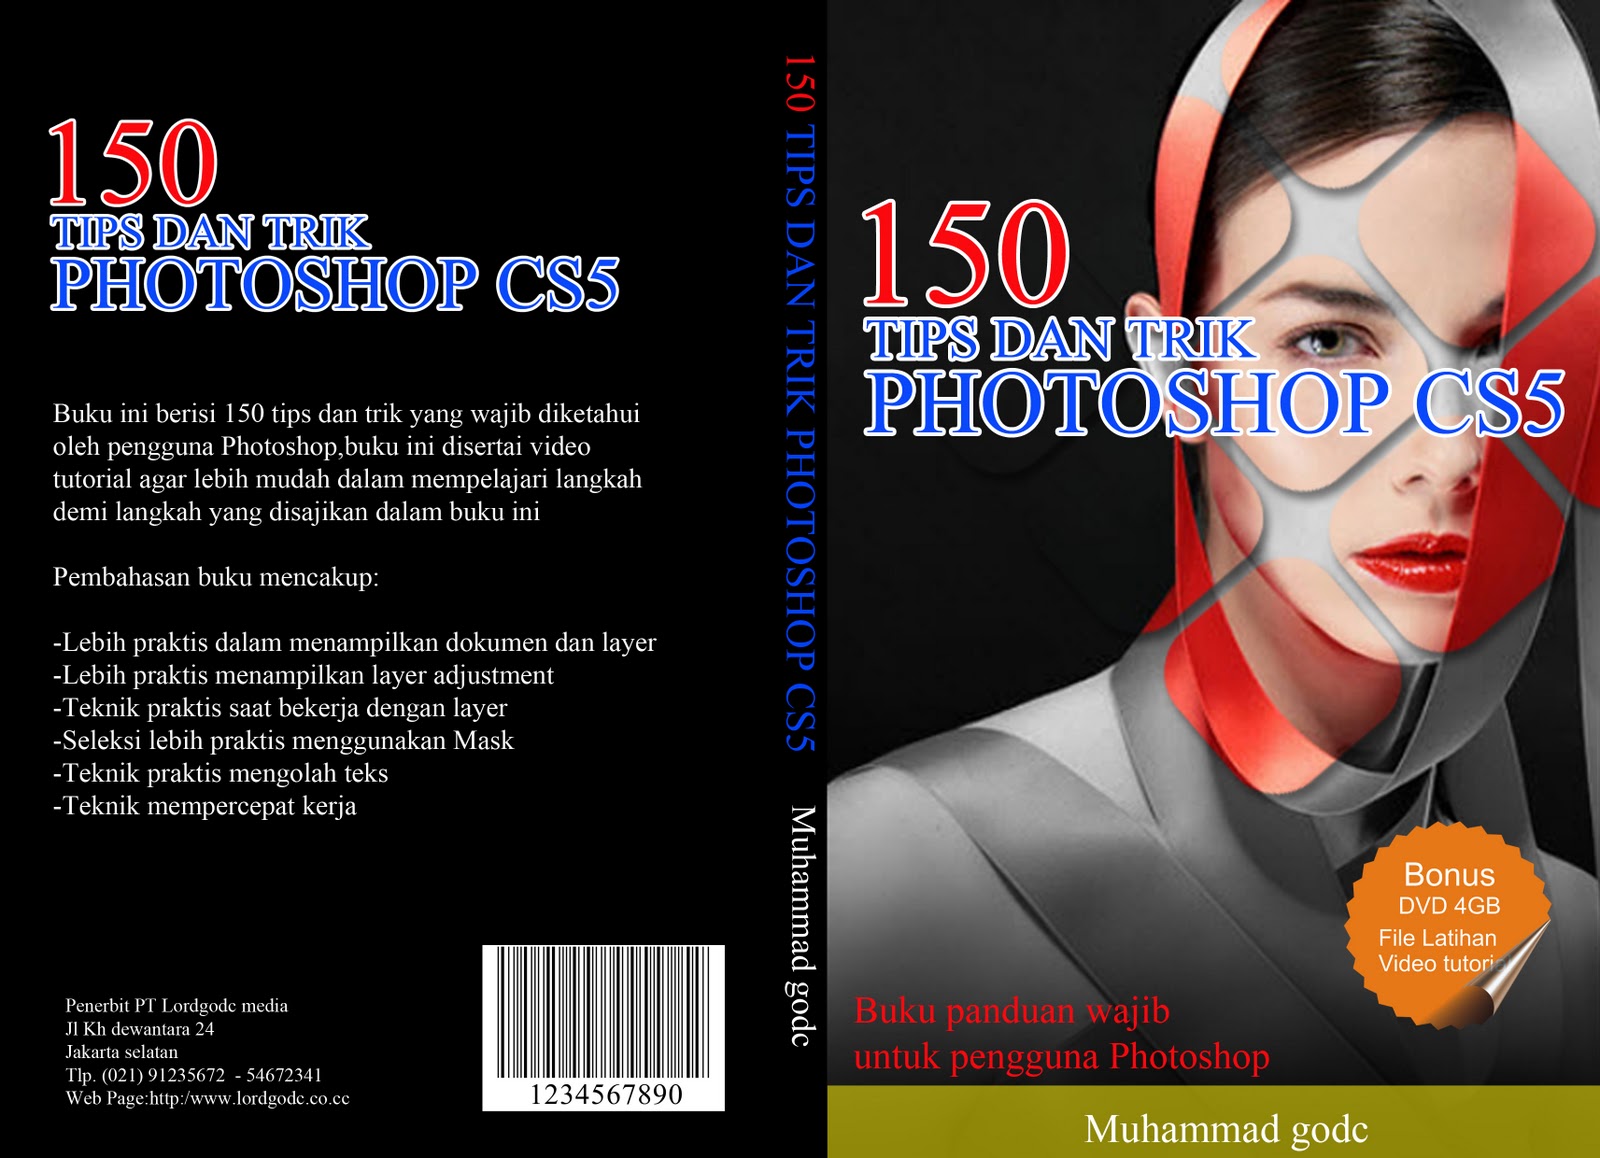 Desain cover buku dengan Photoshop dan Corel draw.